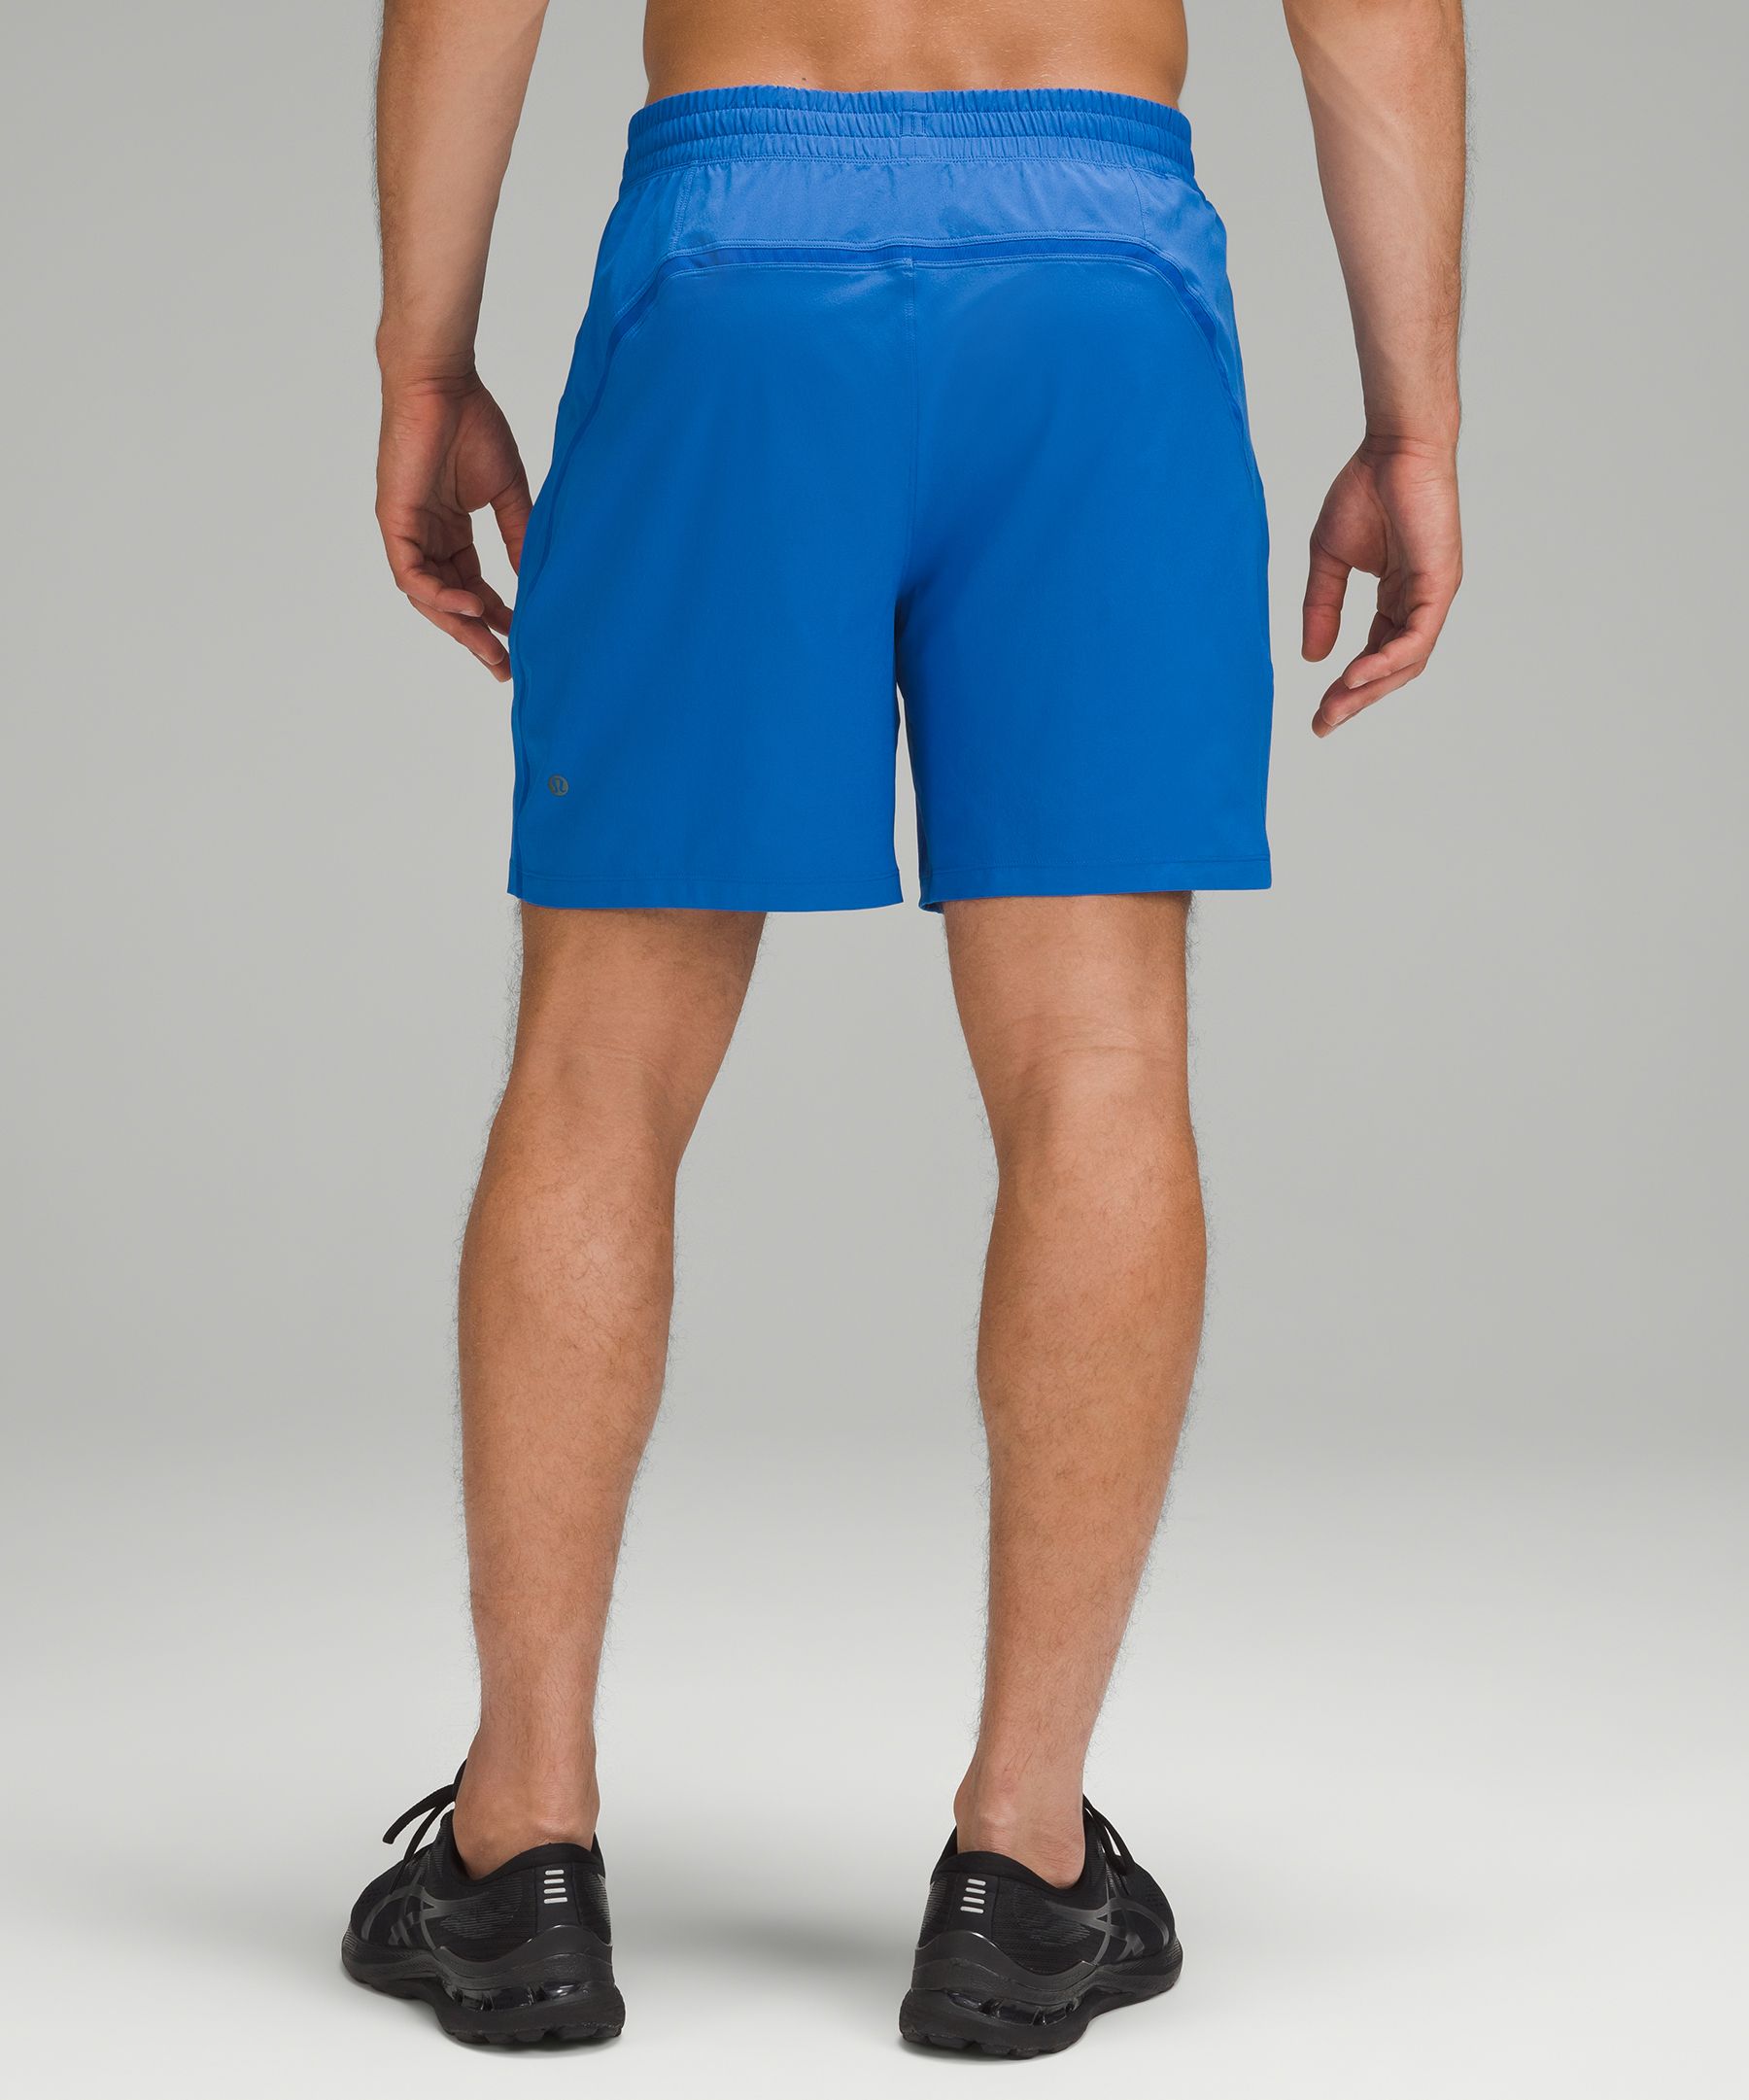 LULULEMON Men's Pace Breaker Short (White (7 Lined), XL, x_l) at   Men's Clothing store